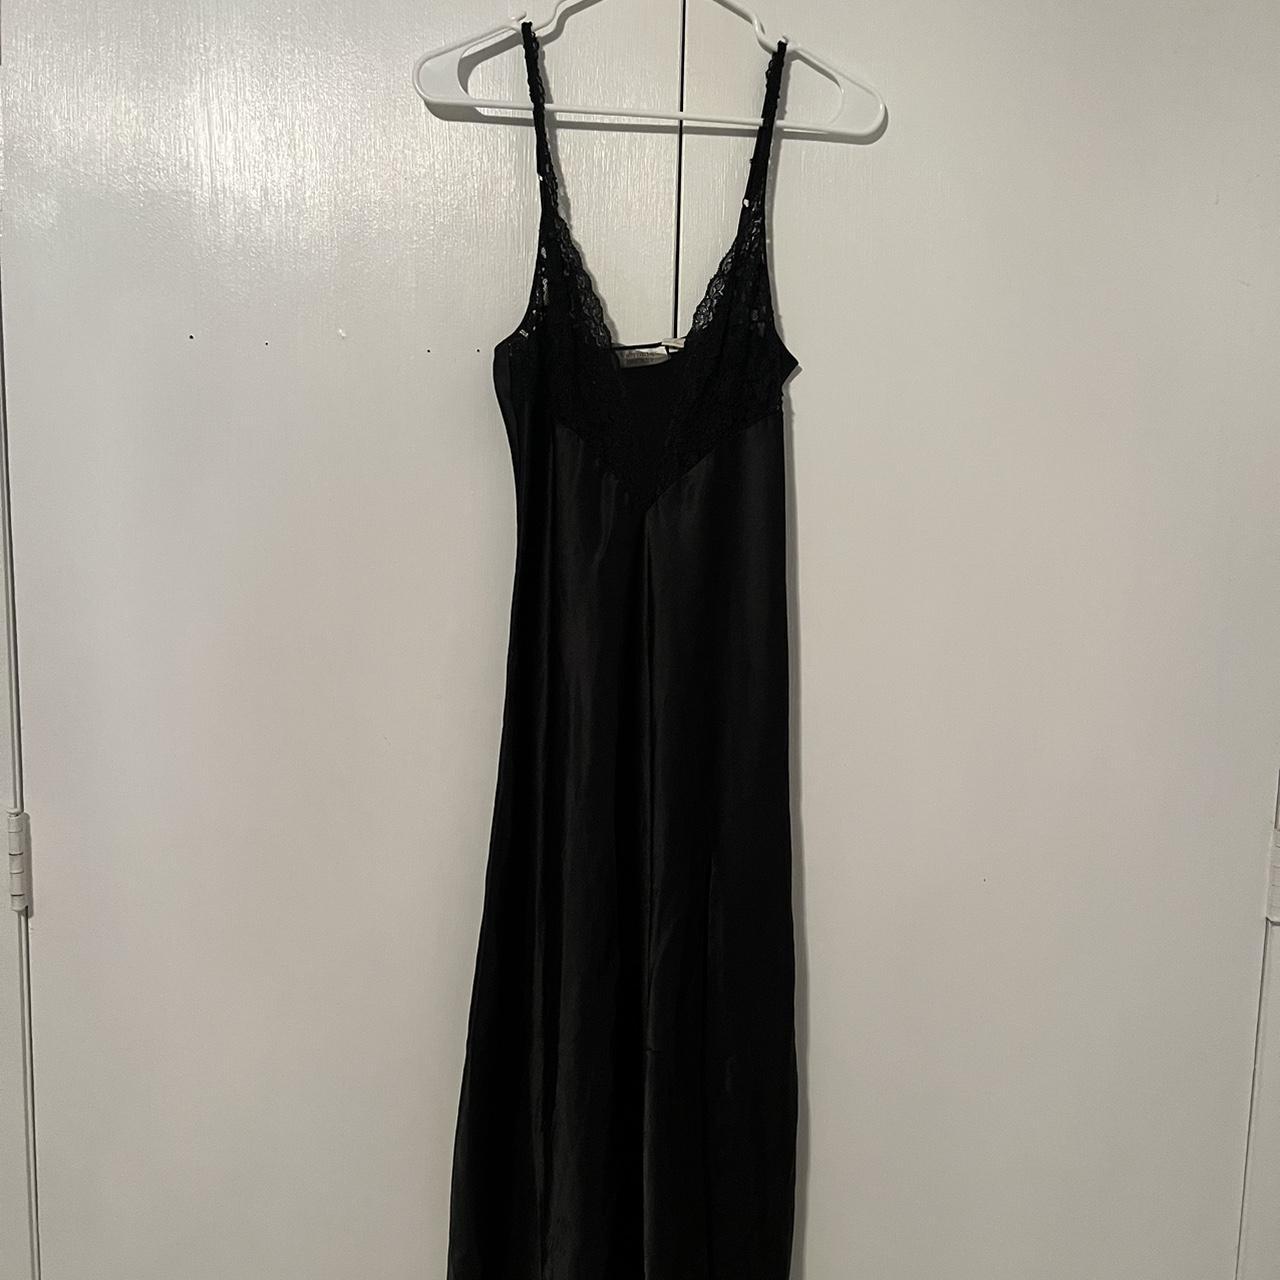 Long black Victoria secret slip dress, gold tag size... - Depop